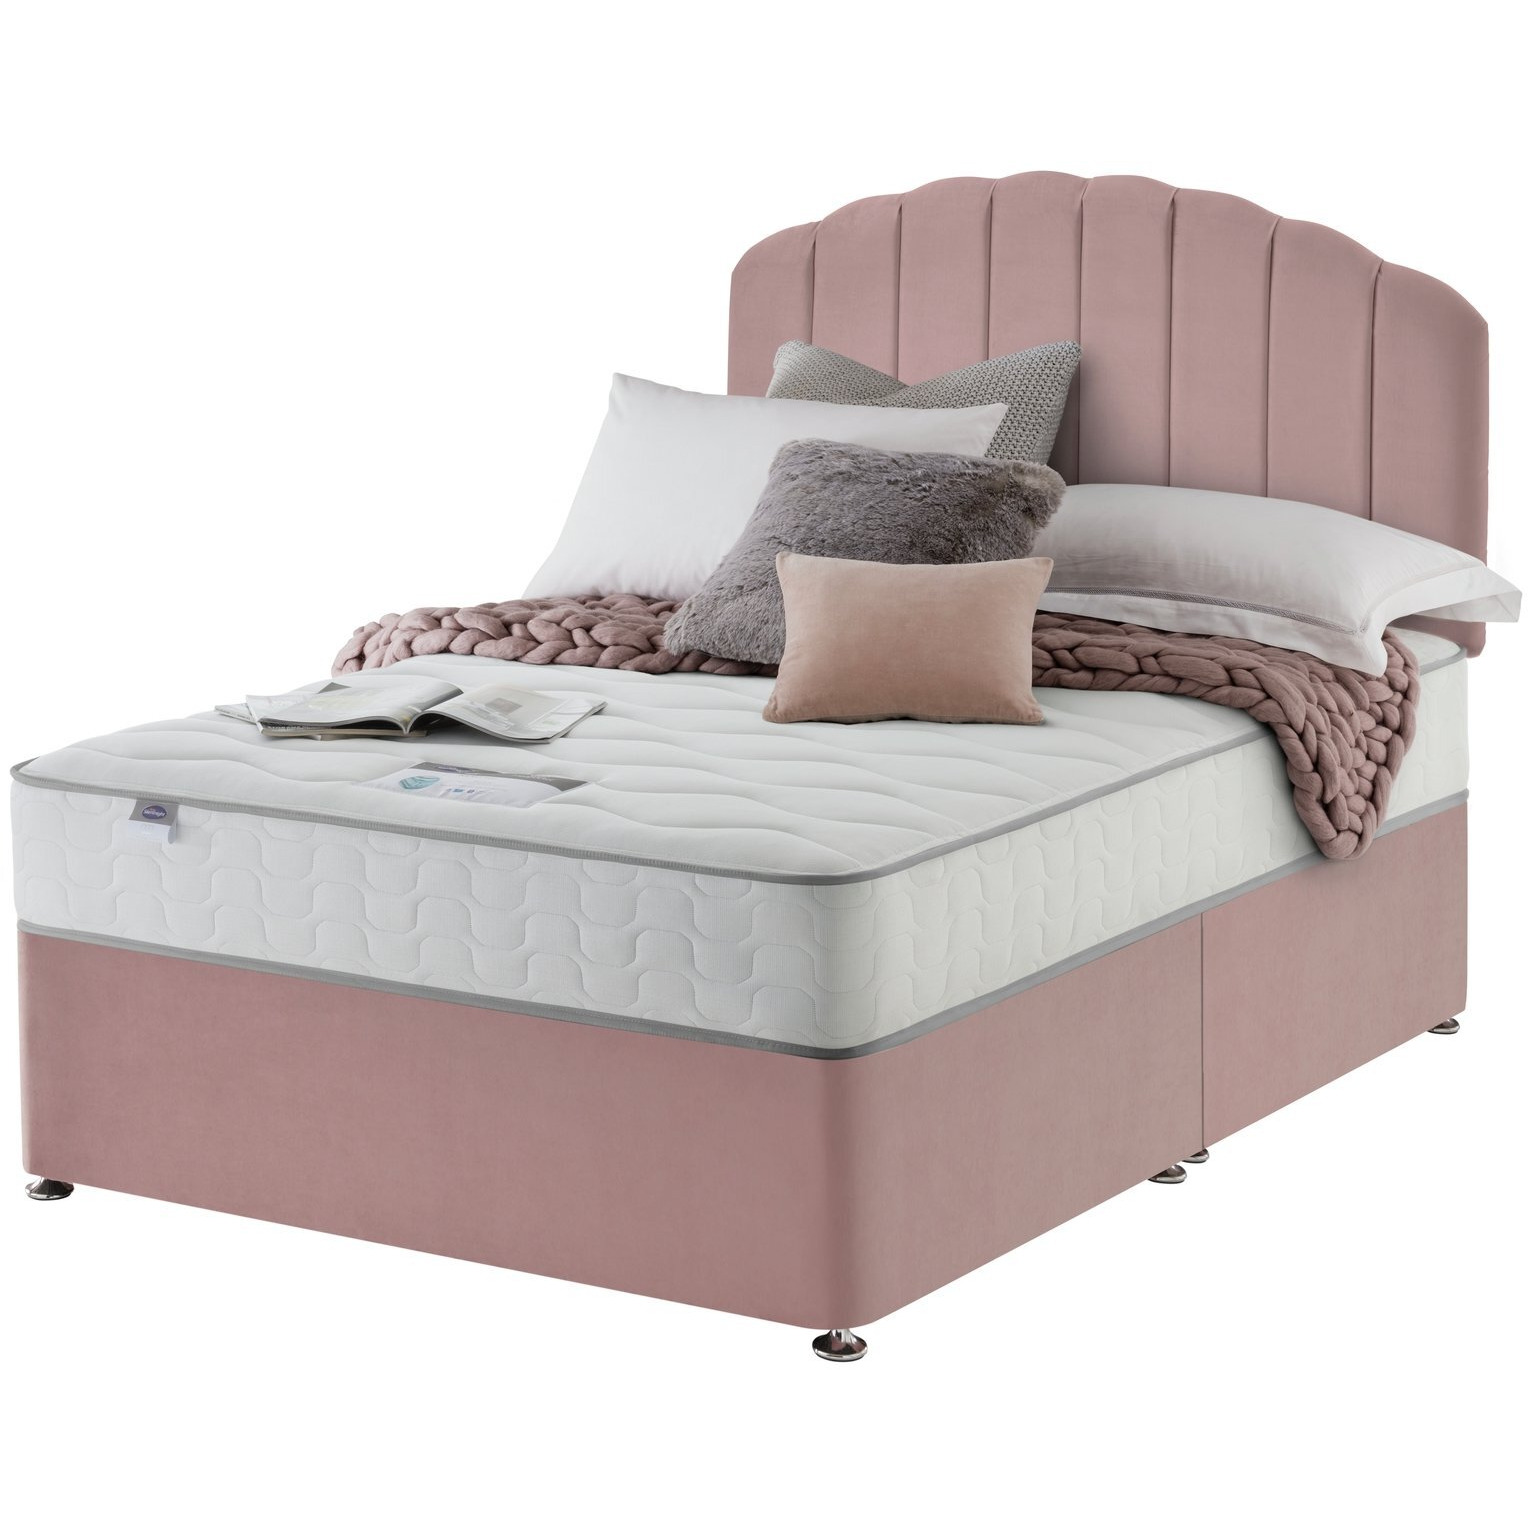 Silentnight Middleton Double Comfort Divan Bed - Pink - image 1